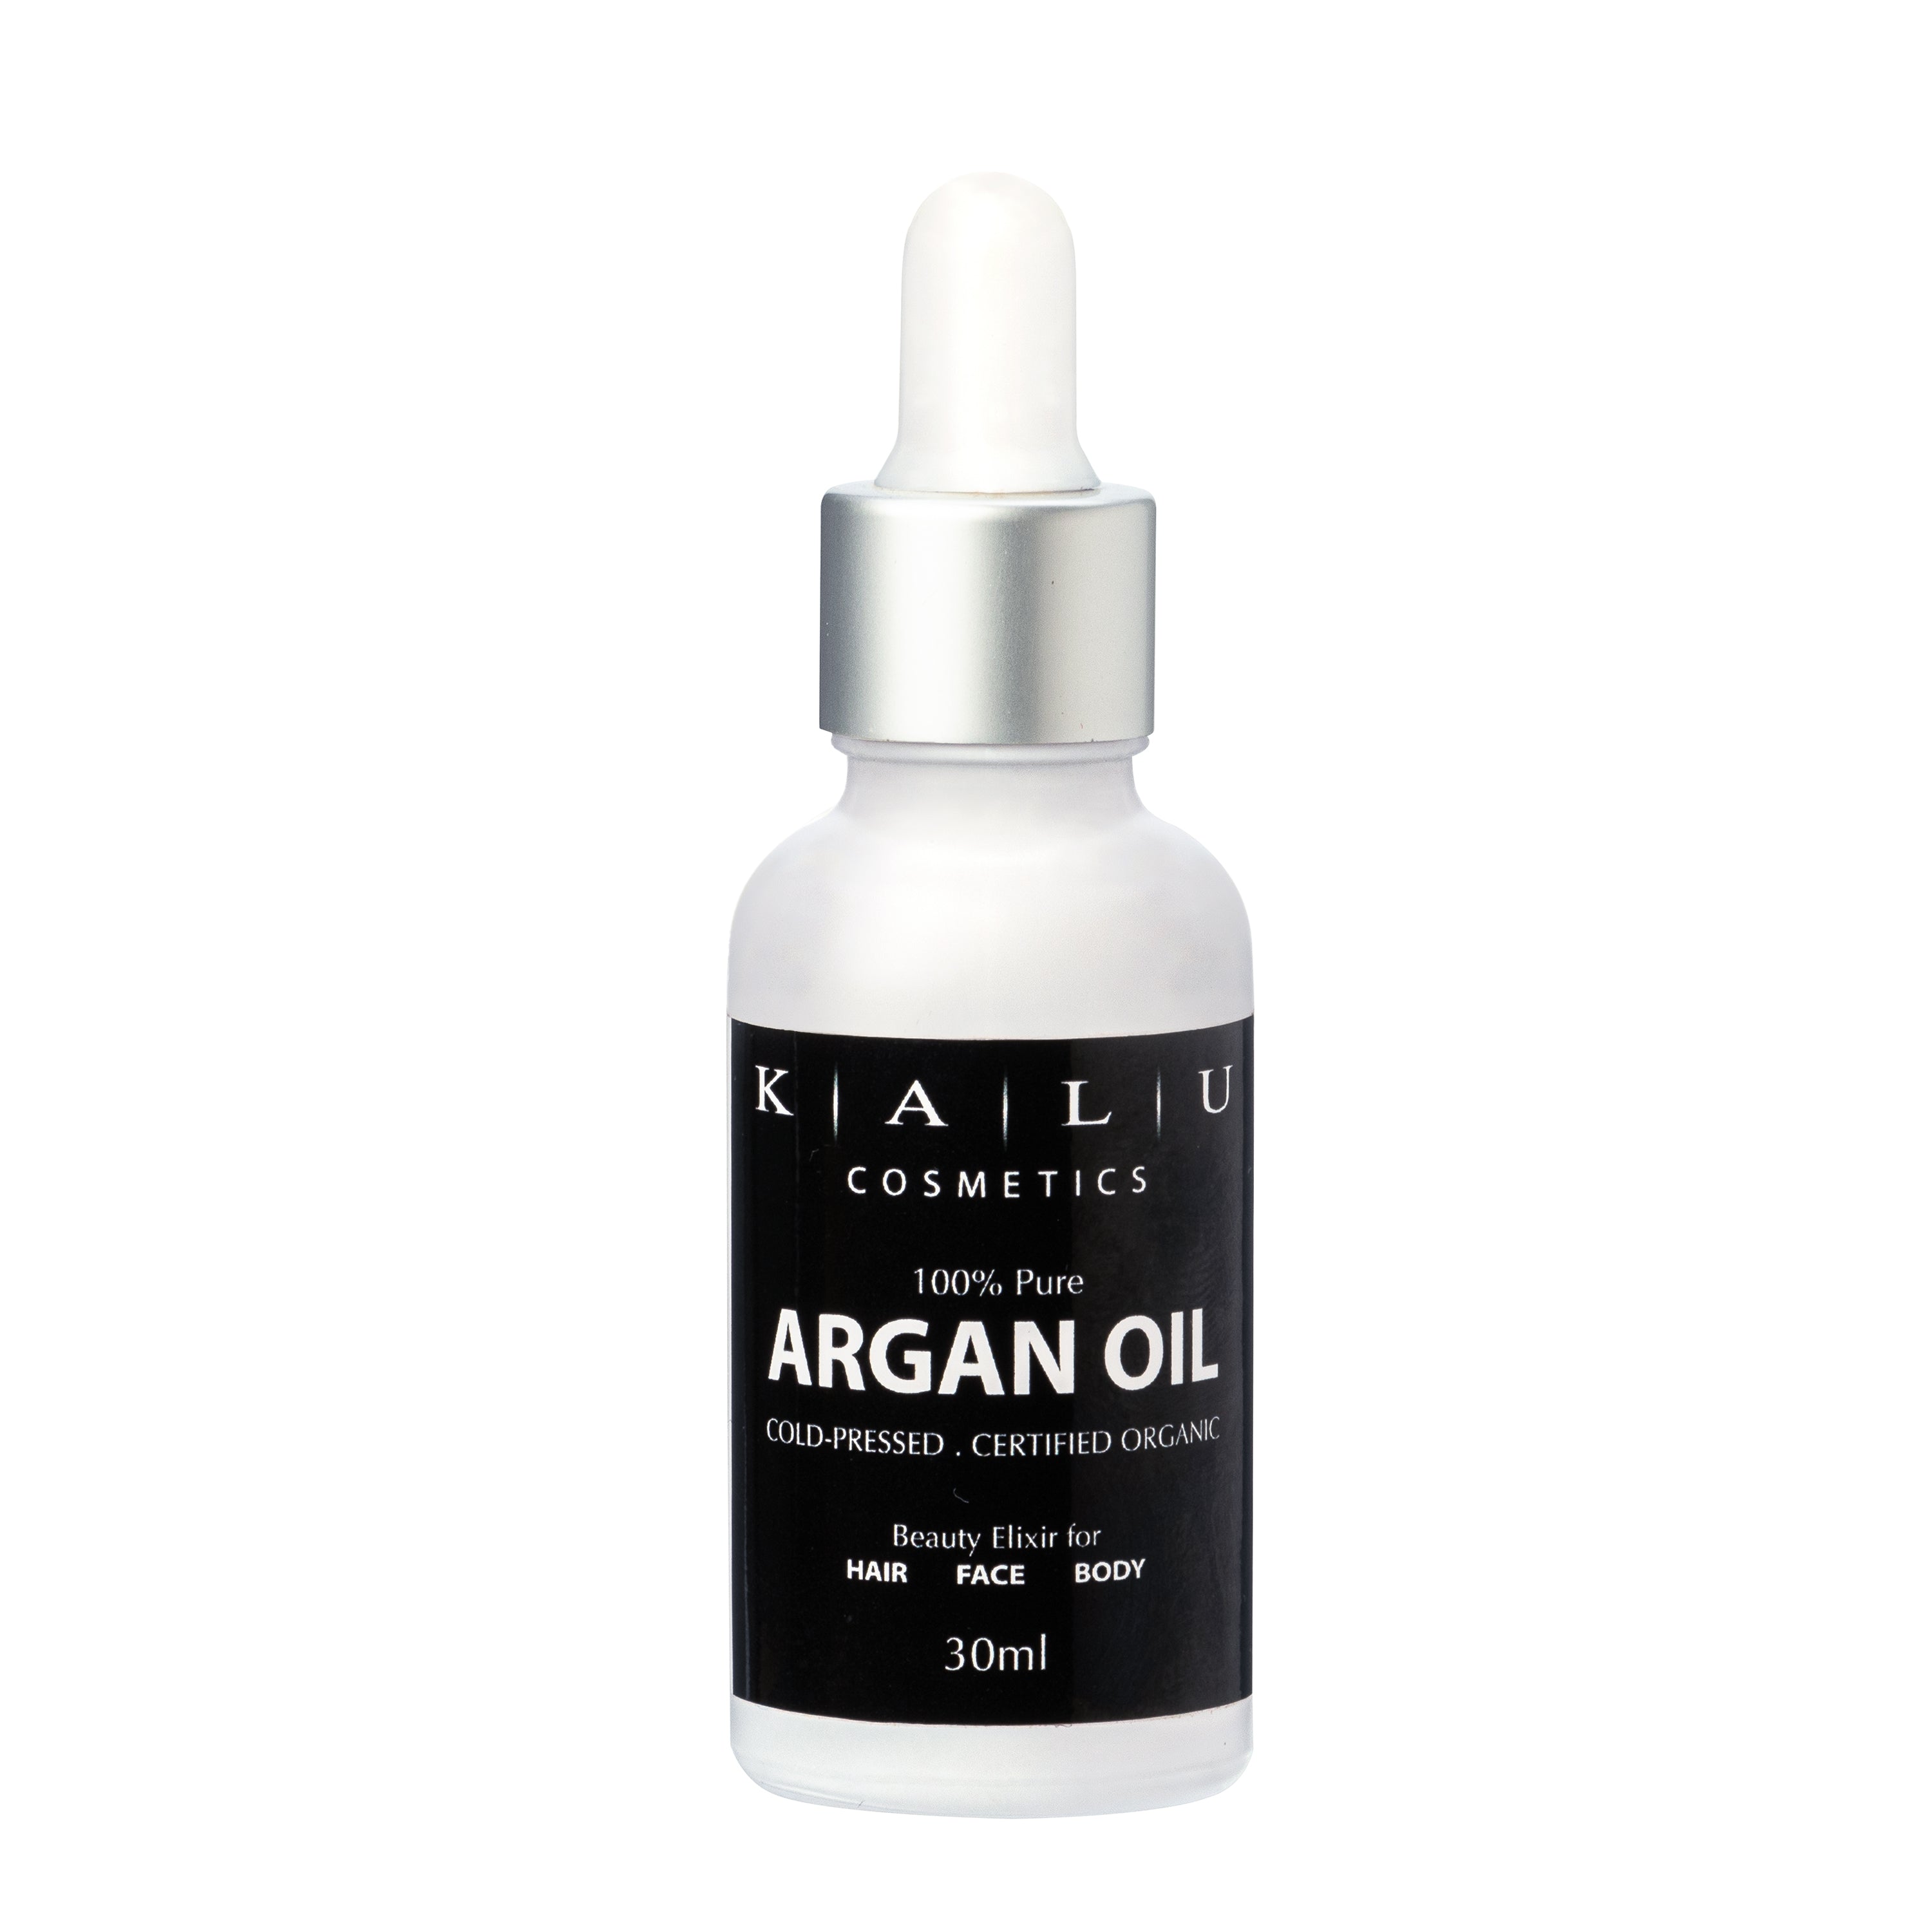 ORGANIC ARGAN OIL - 100% Cold-Pressed